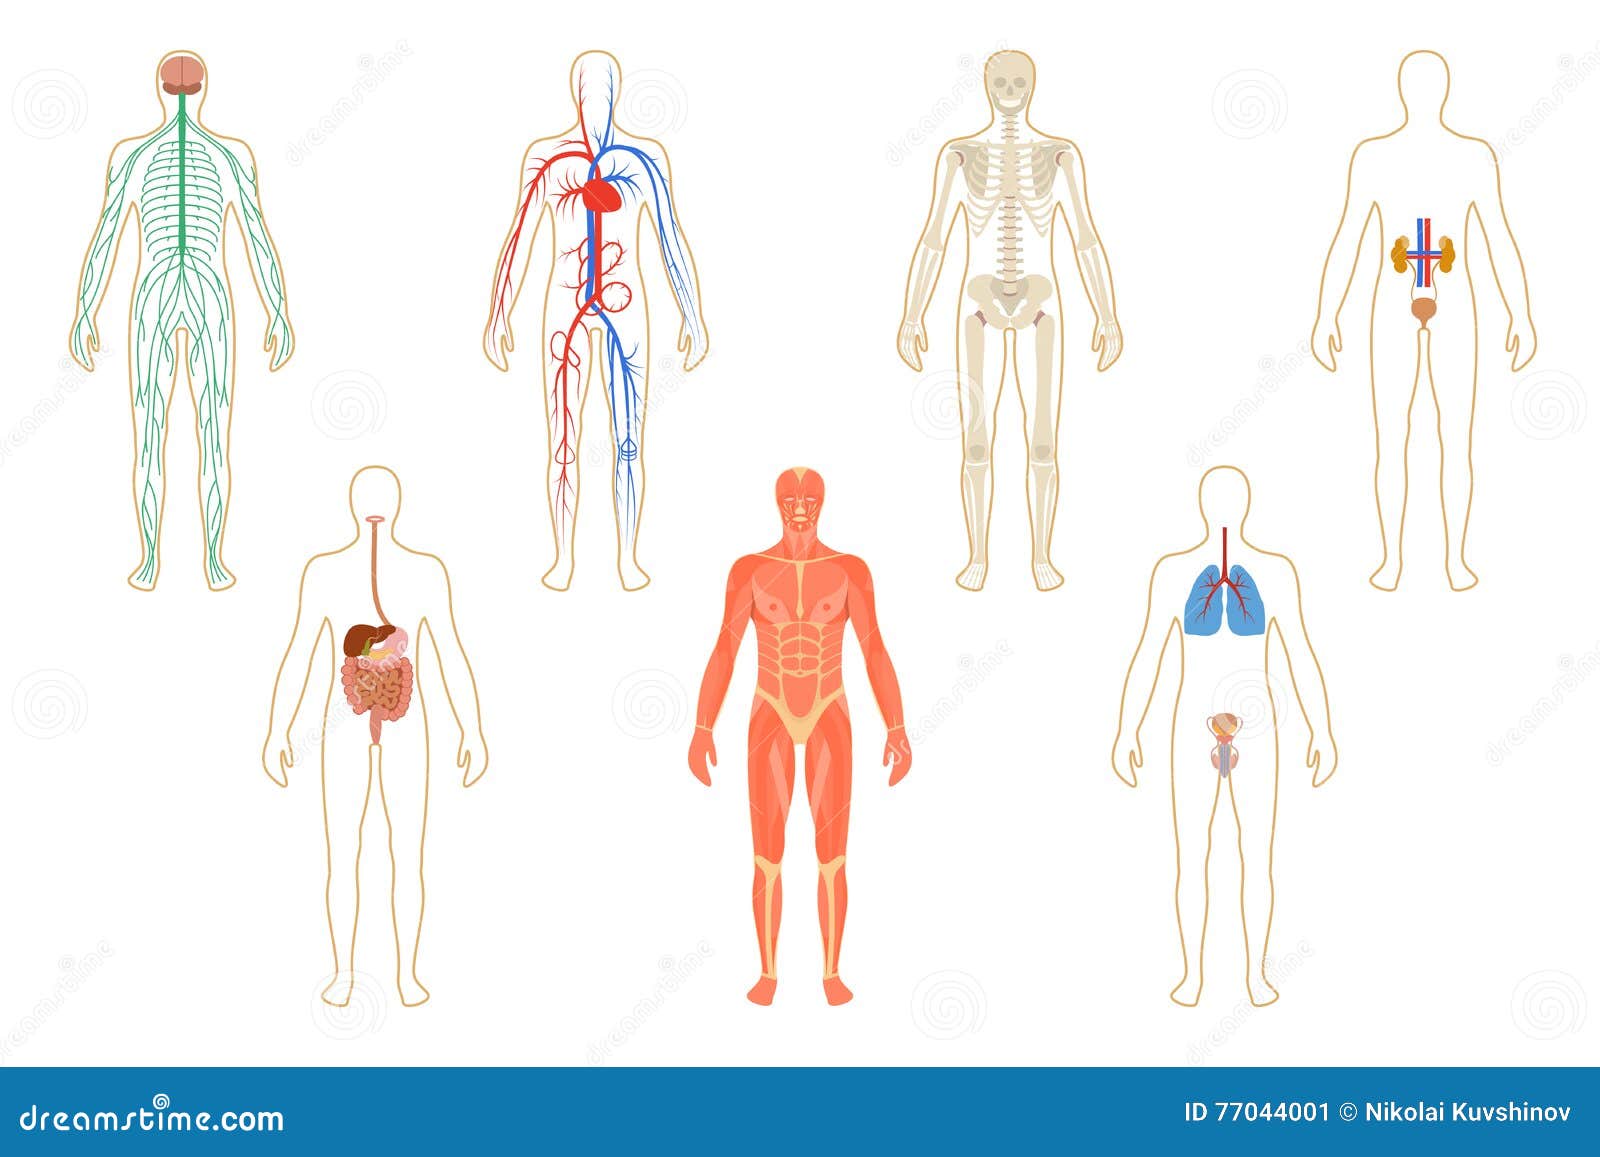 Изображения систем органов человека. Системы тела человека. Системы органов человека рисунок. Системы органов человека для детей.